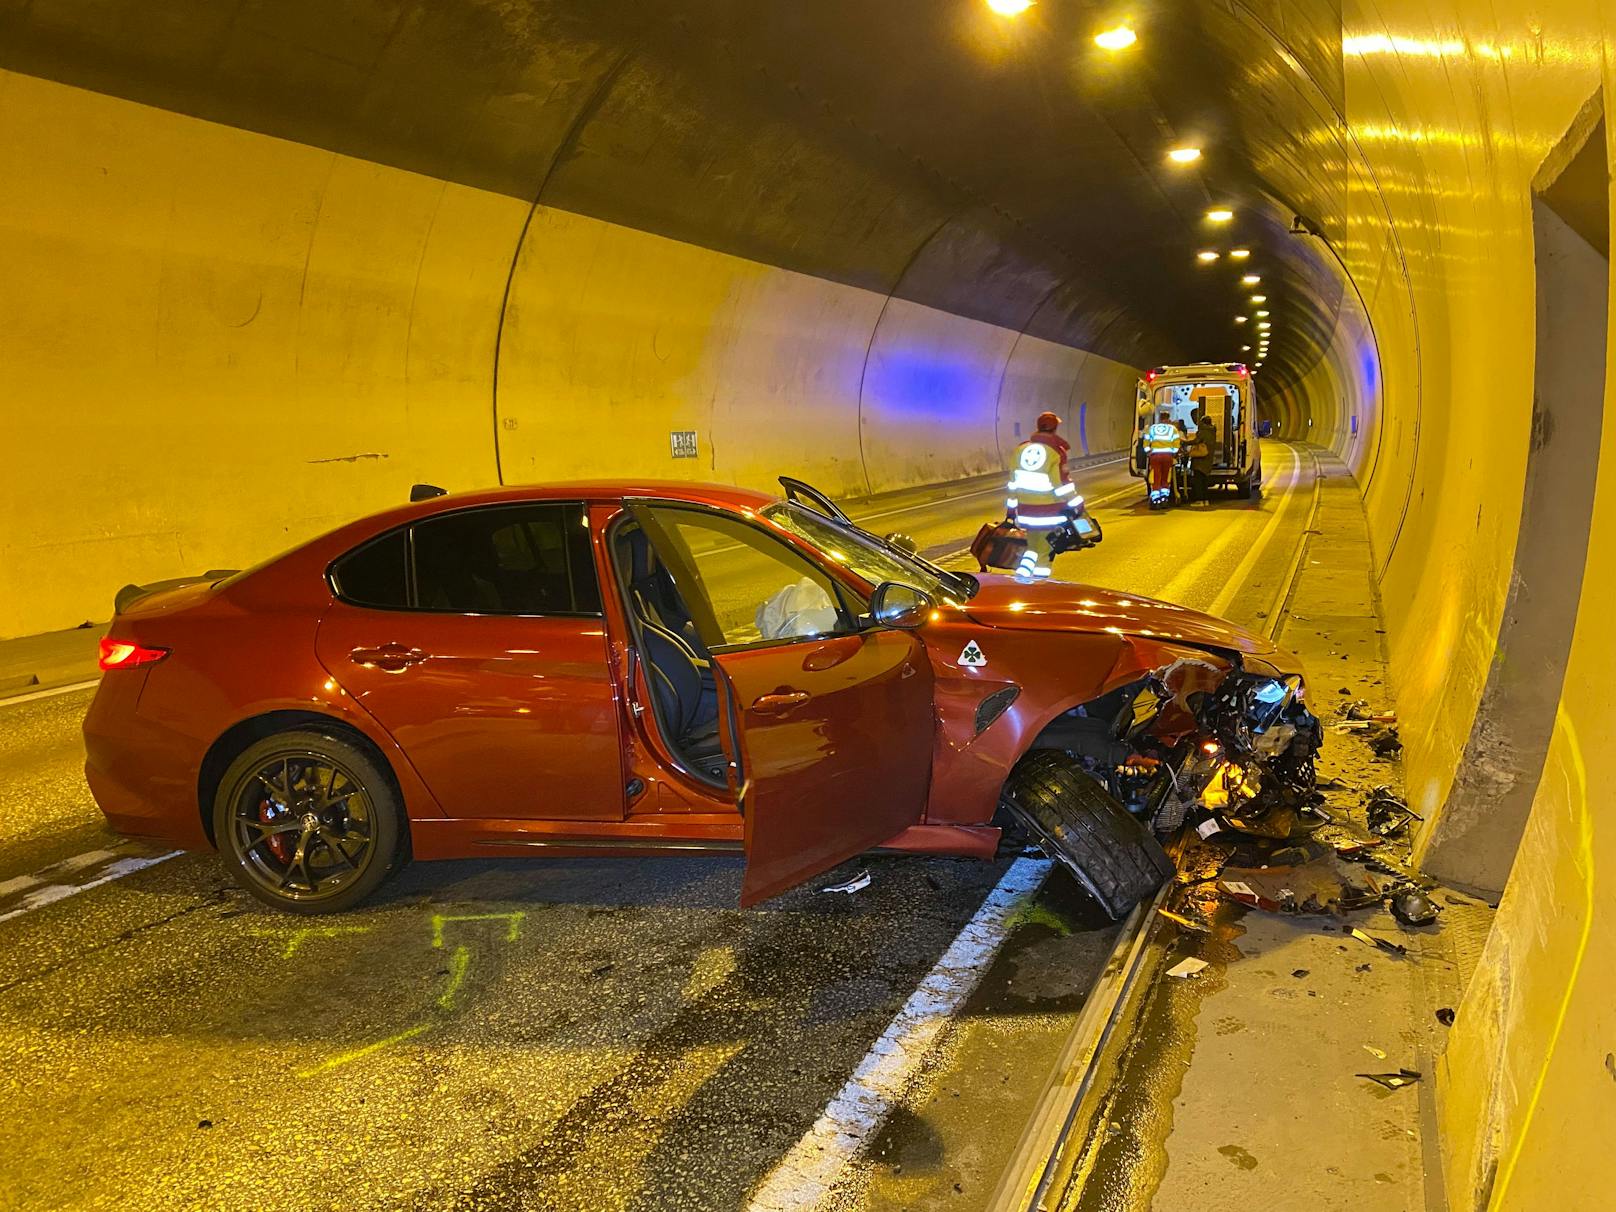 Völlig demoliert: Das PS-Monster des Italieners nach dem Unfall in Tunnel.